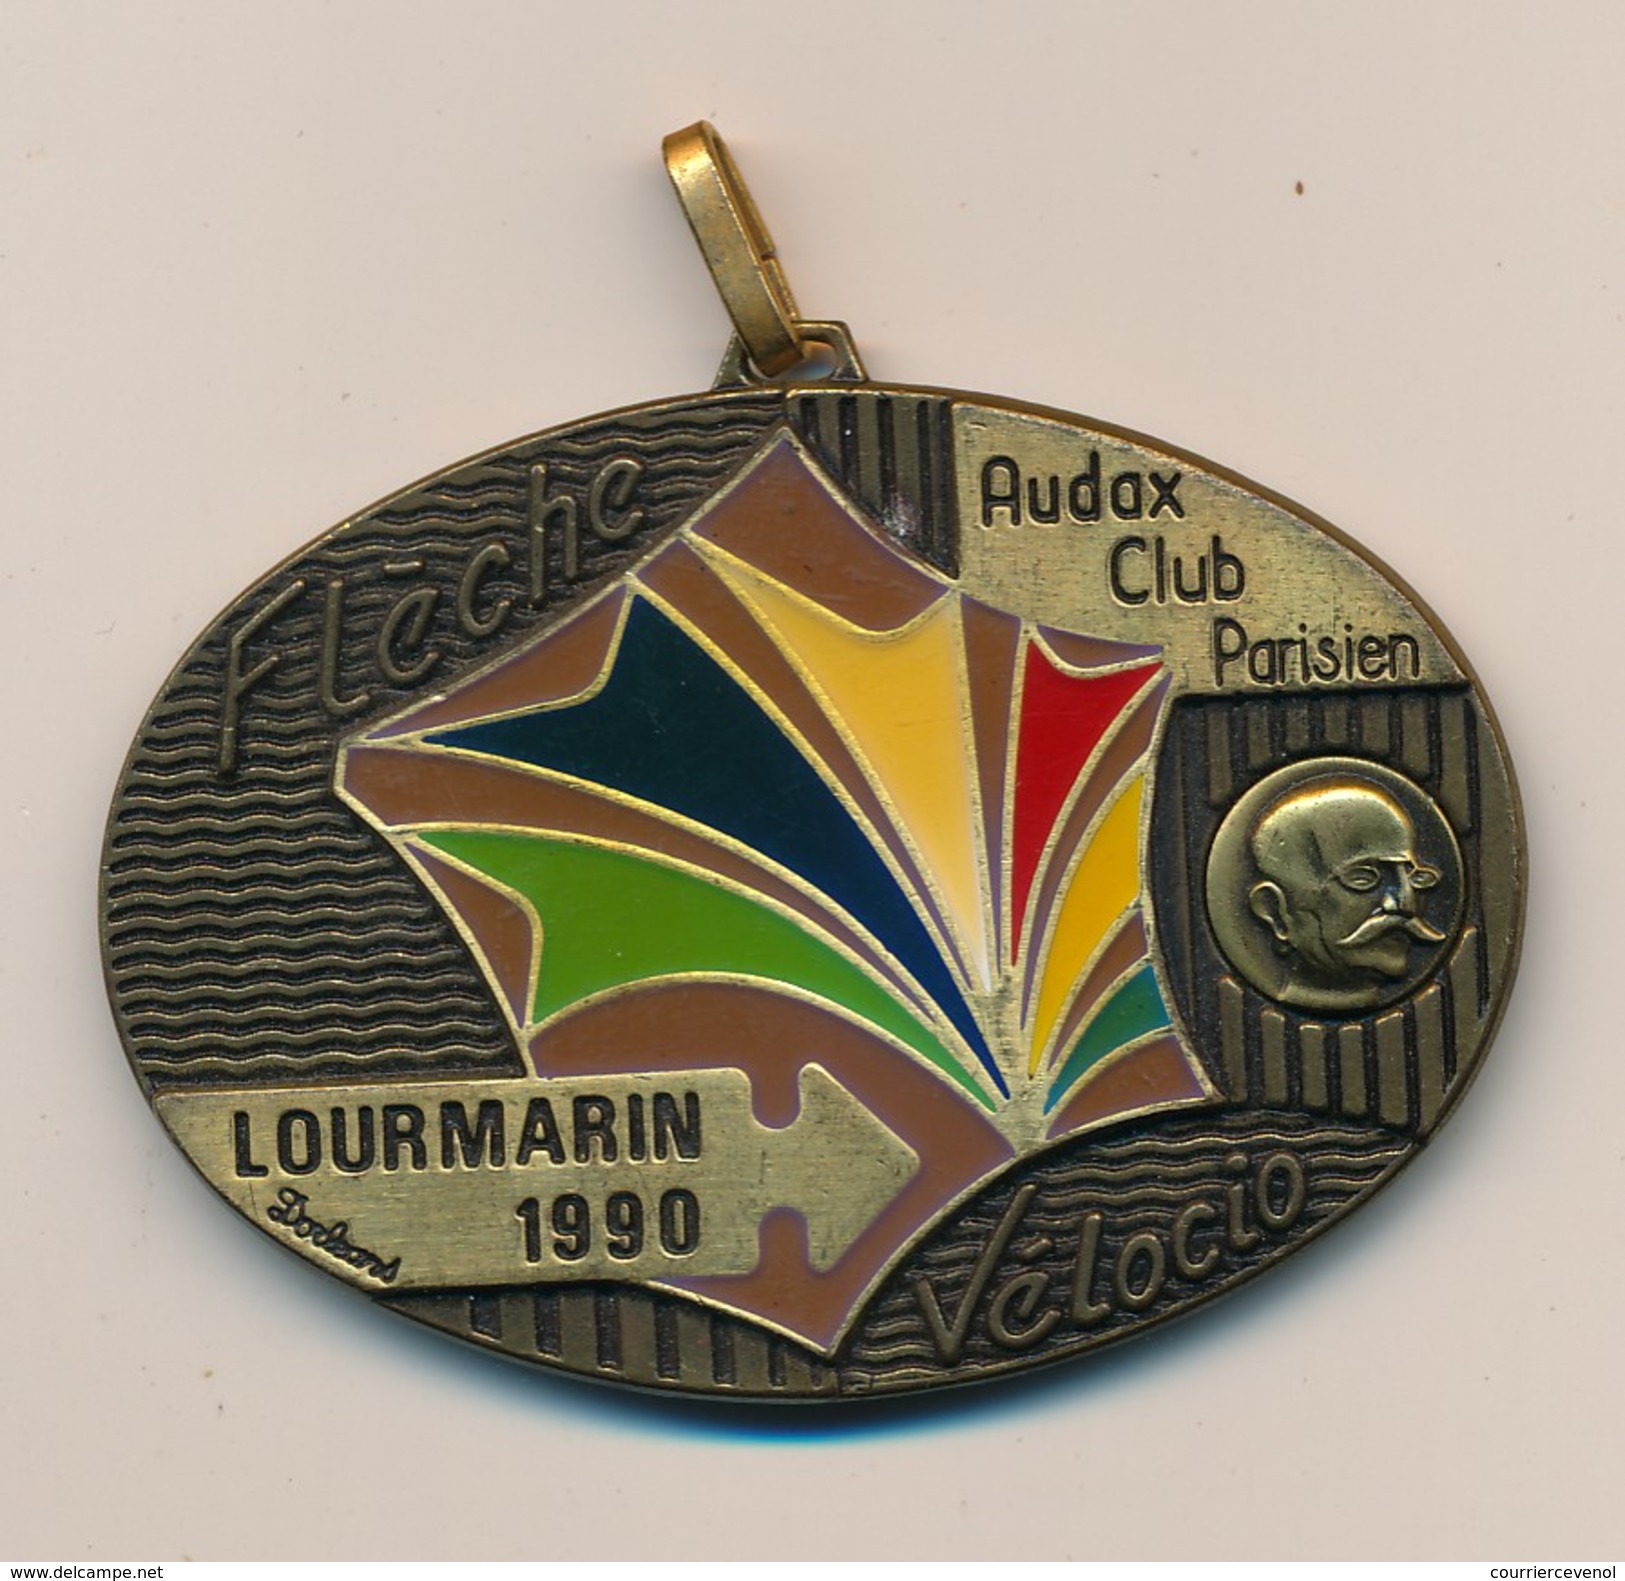 Médaille "Flèche Vélocio - Lourmarin 1990" - AUDAX CLUB PARISIEN - (Cyclotourisme) - Cyclisme